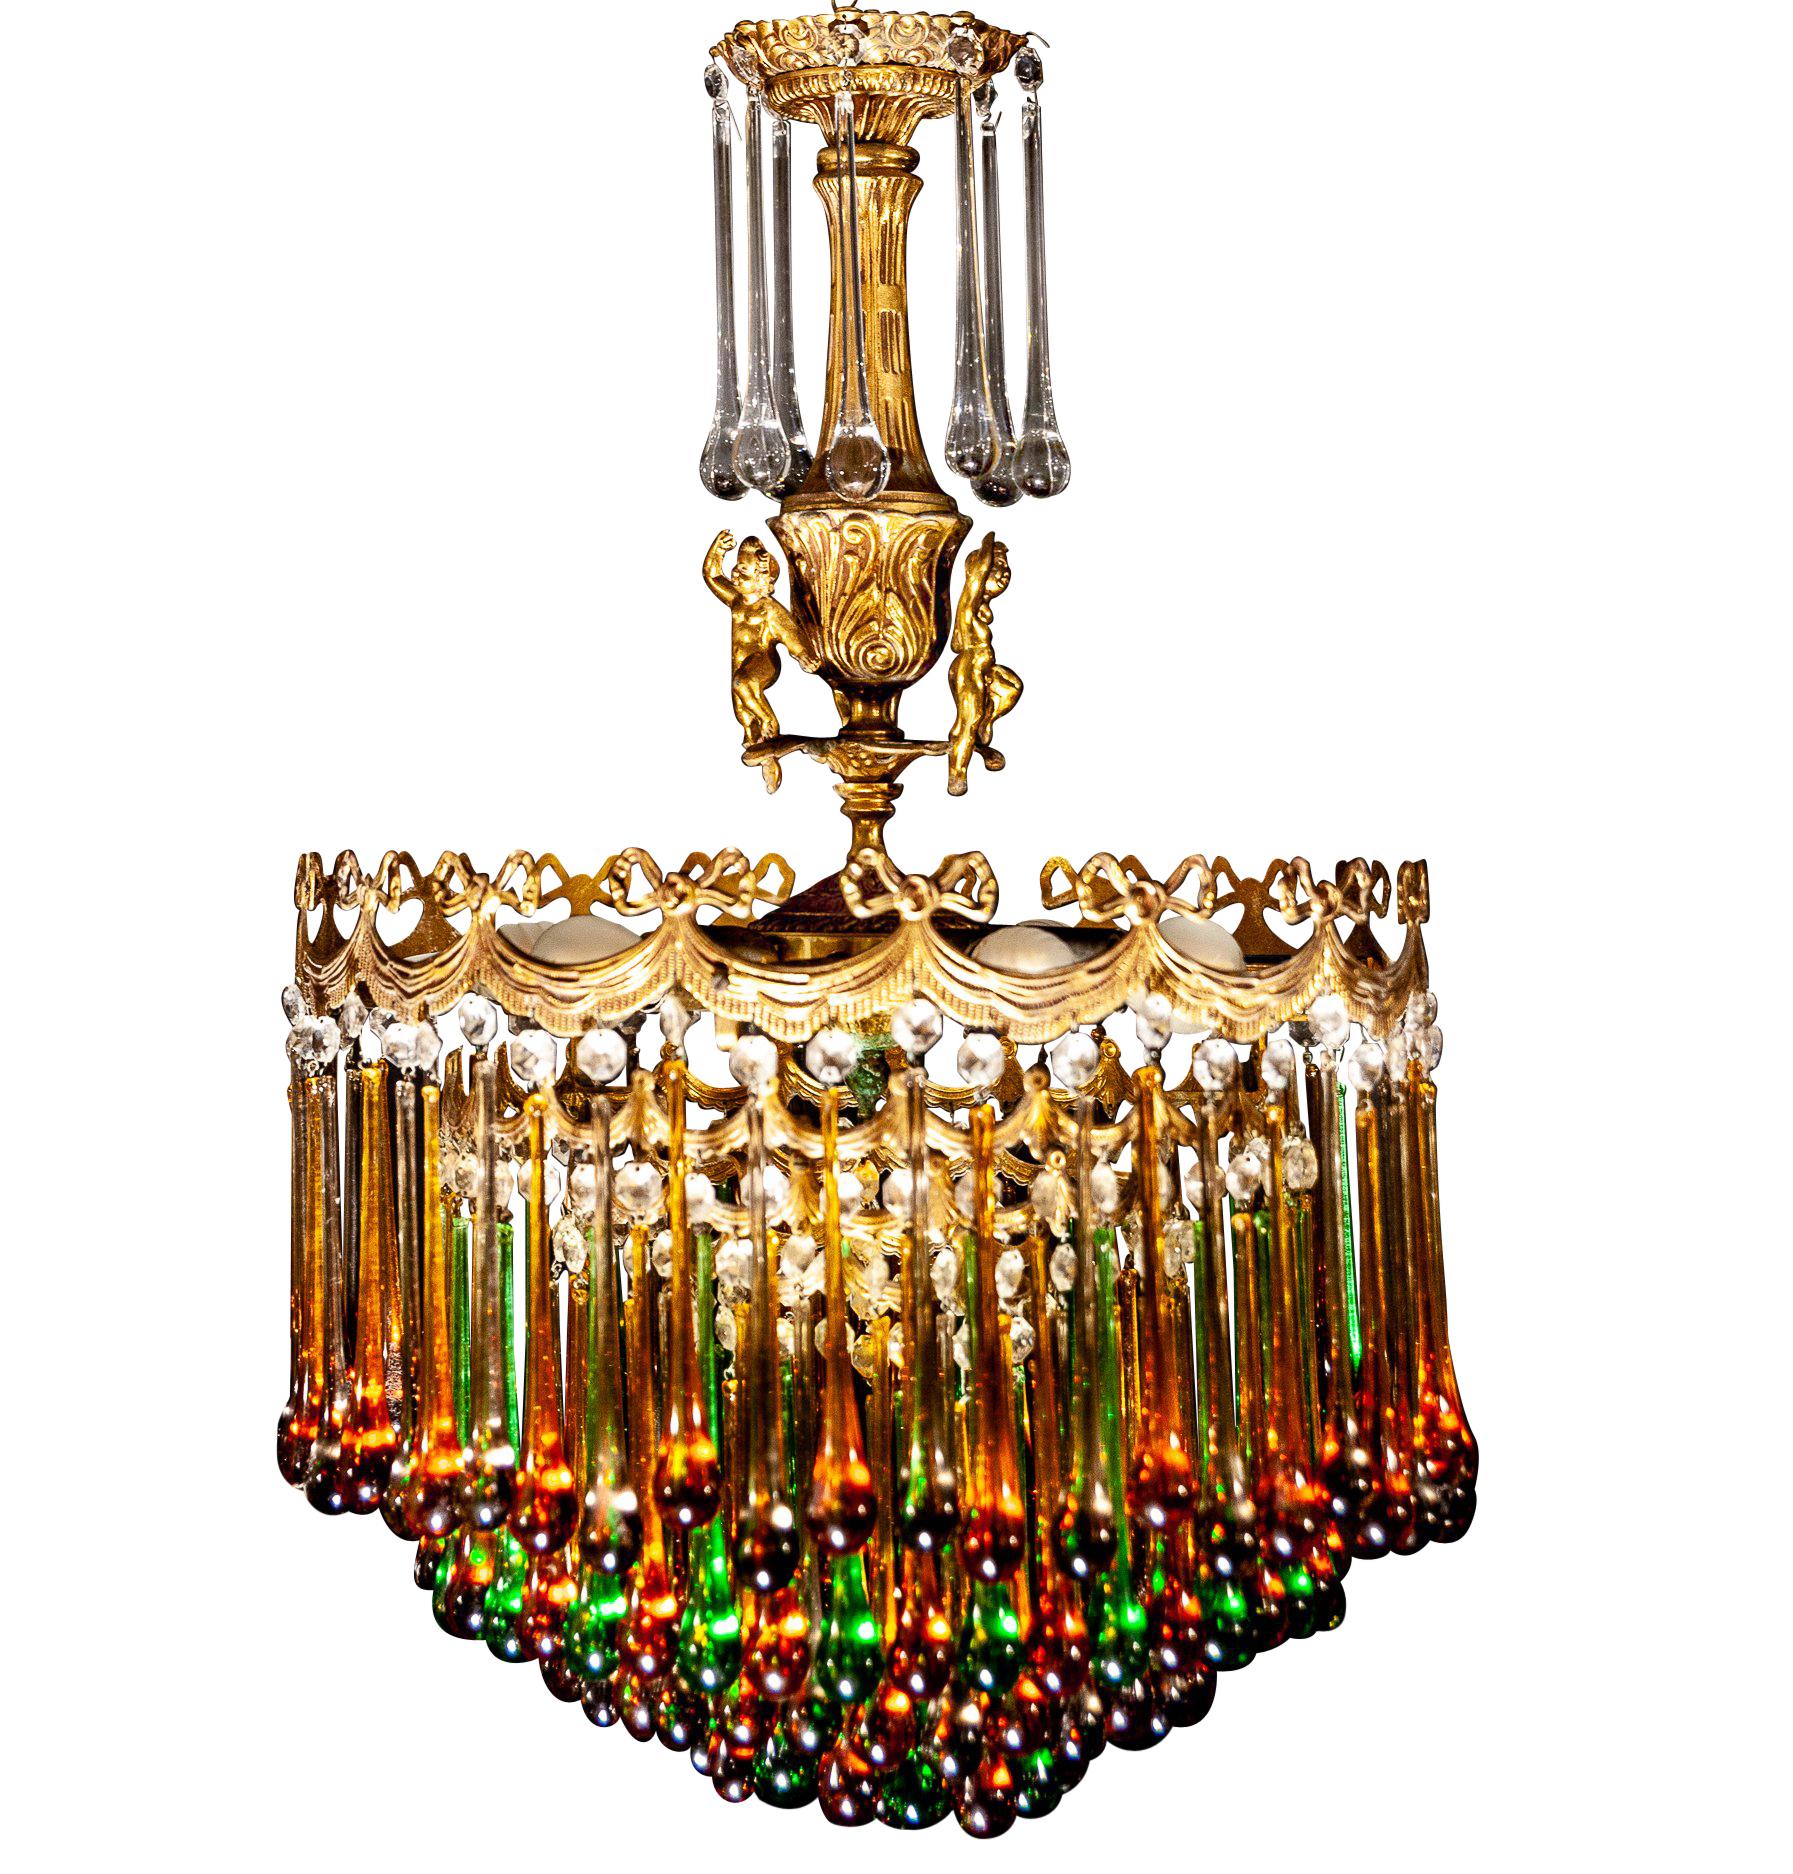 Enchanting Italian Brass and Multicolored Teardrop Chandelier, 1930s